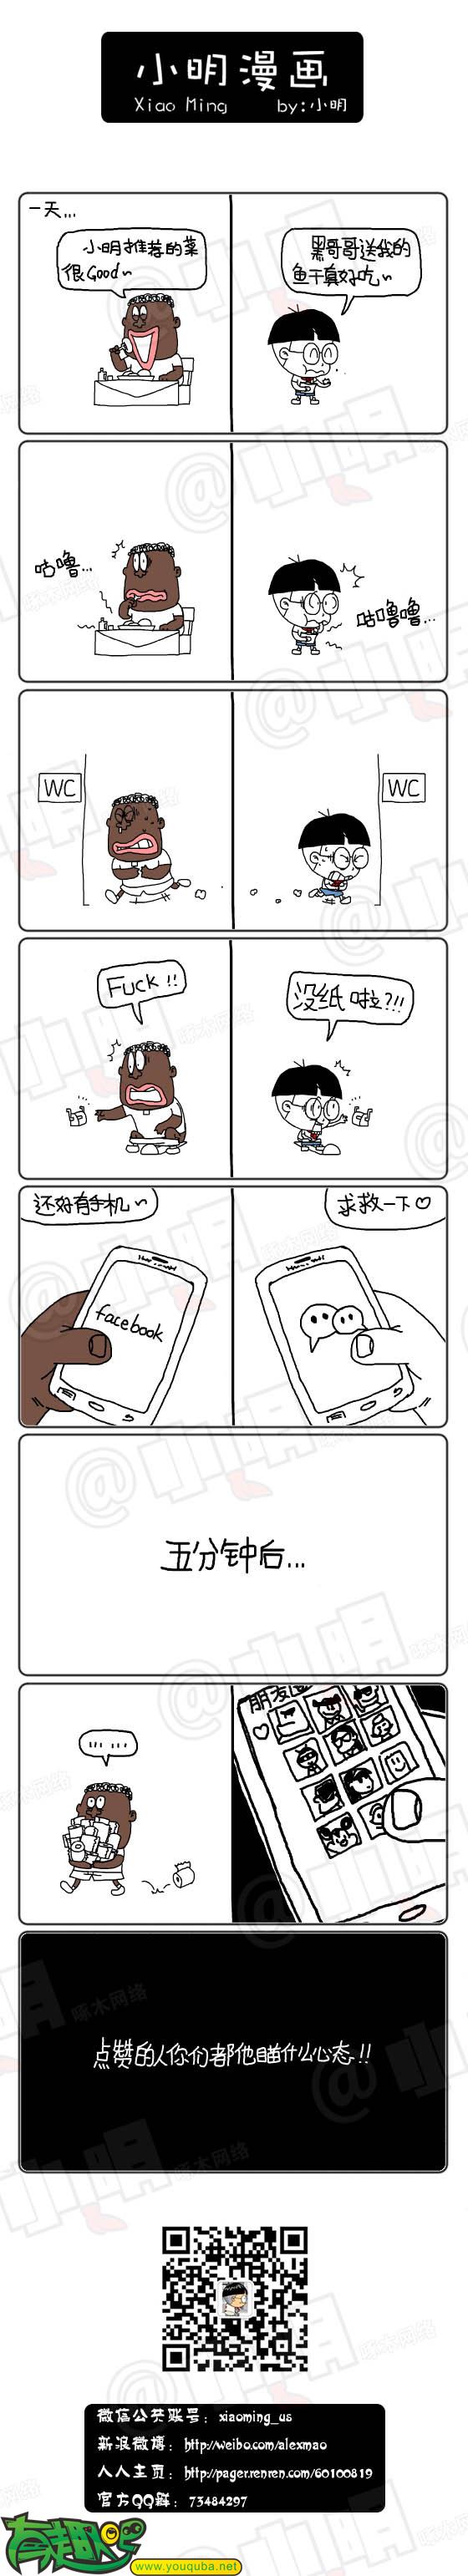 小明系列漫画：手机求救